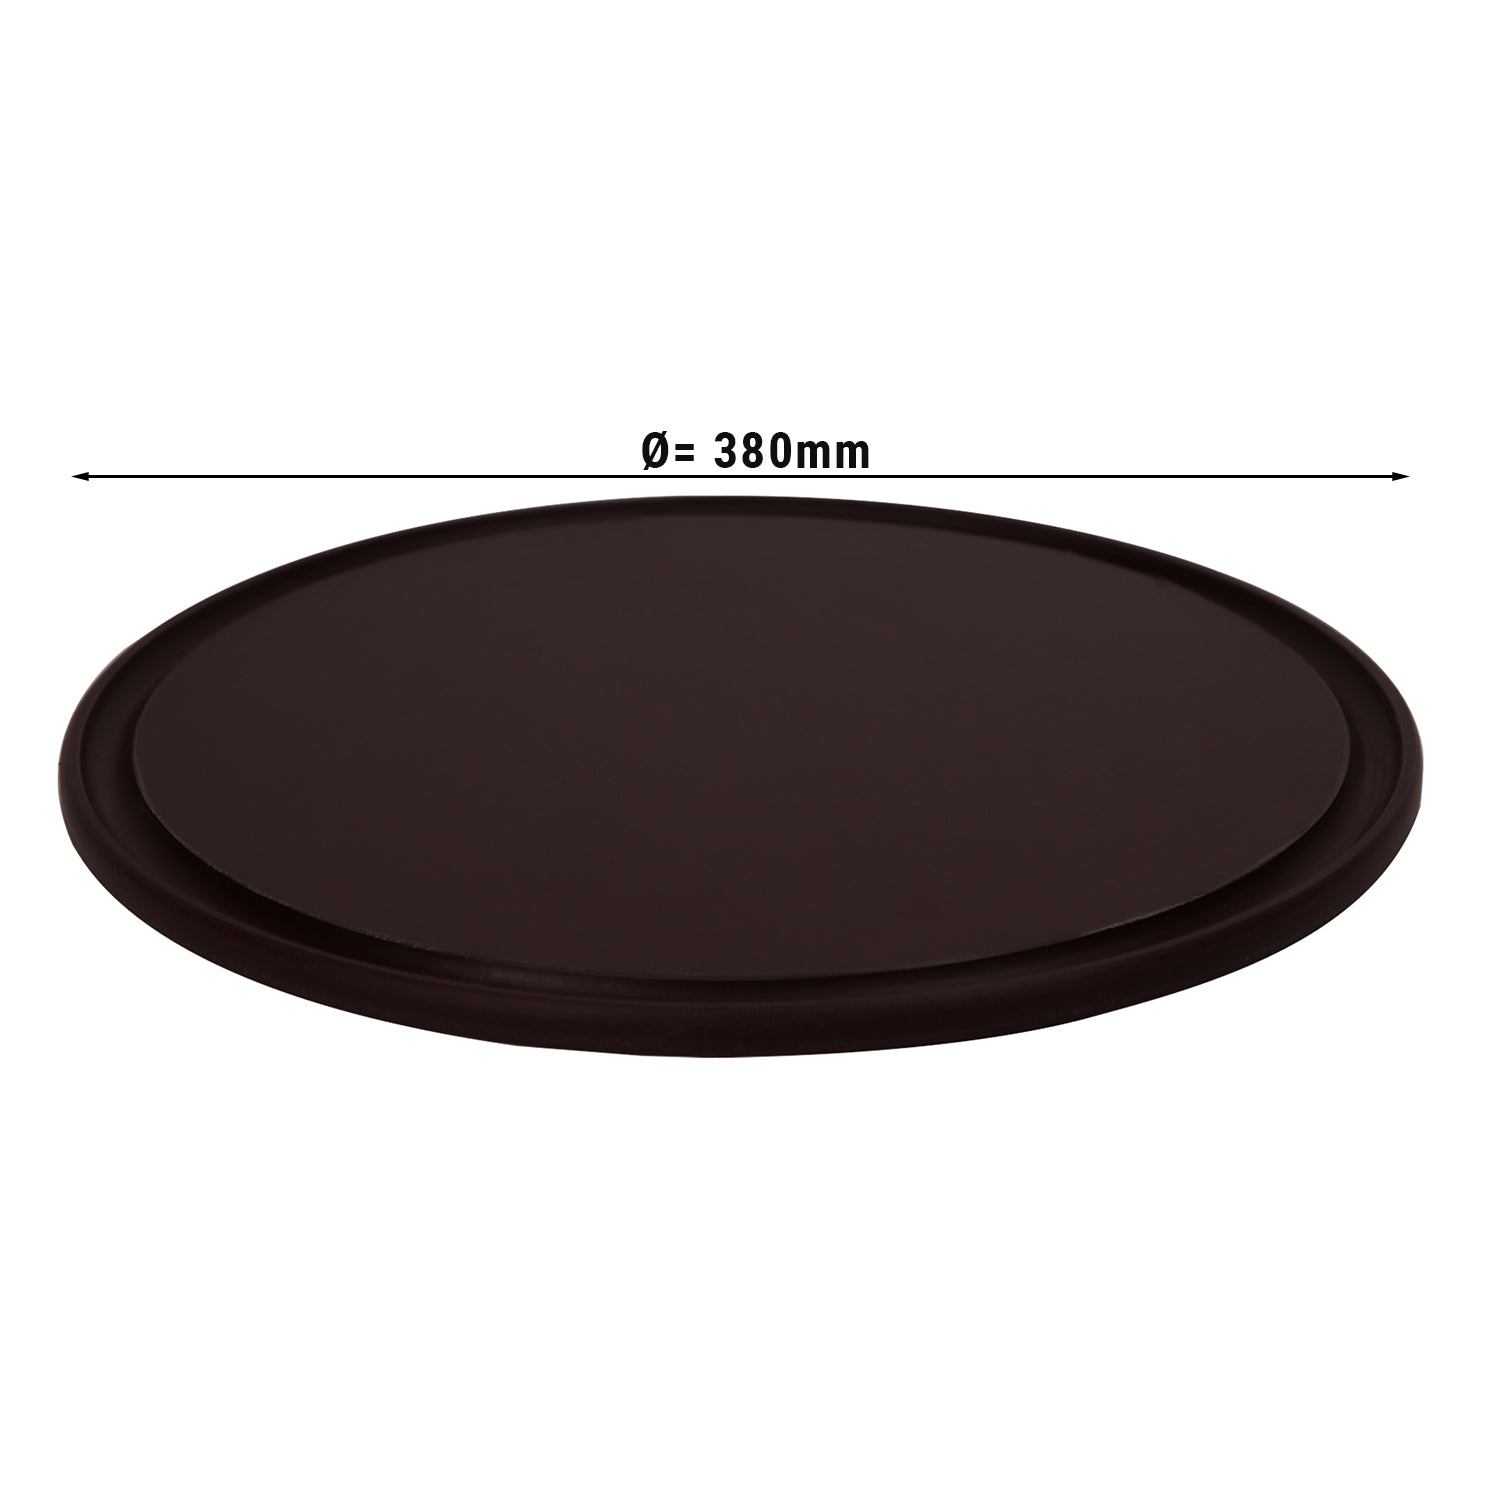 Pizzabakke - 38 cm i diameter